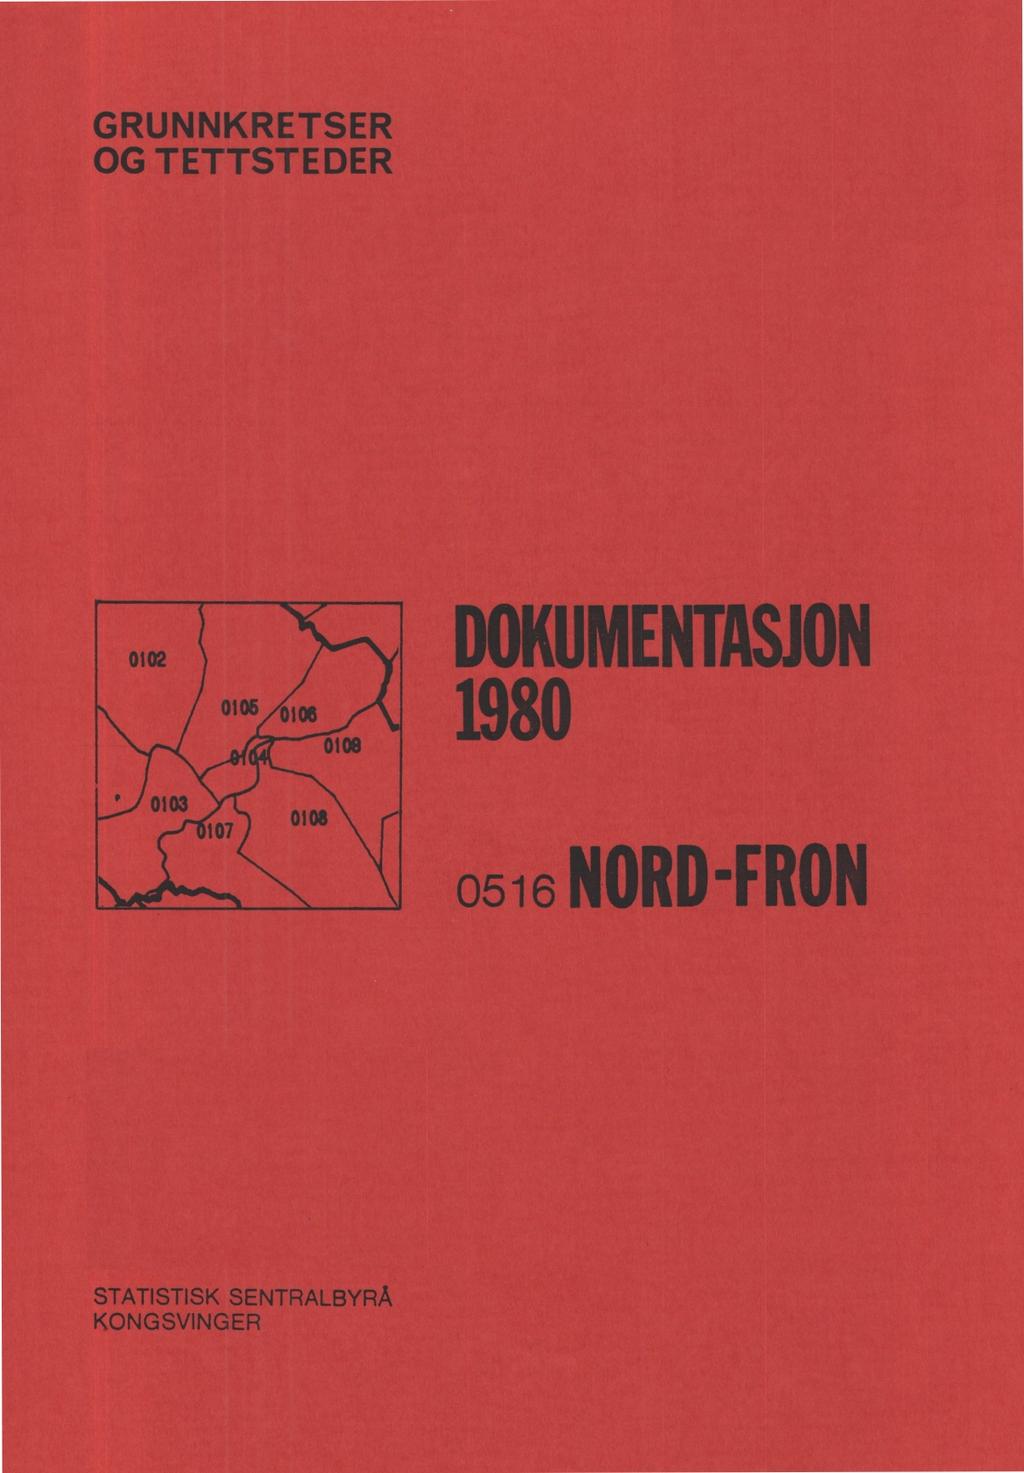 GRUNNKRETSER OG STEDER DOKUMENTASJON 1980